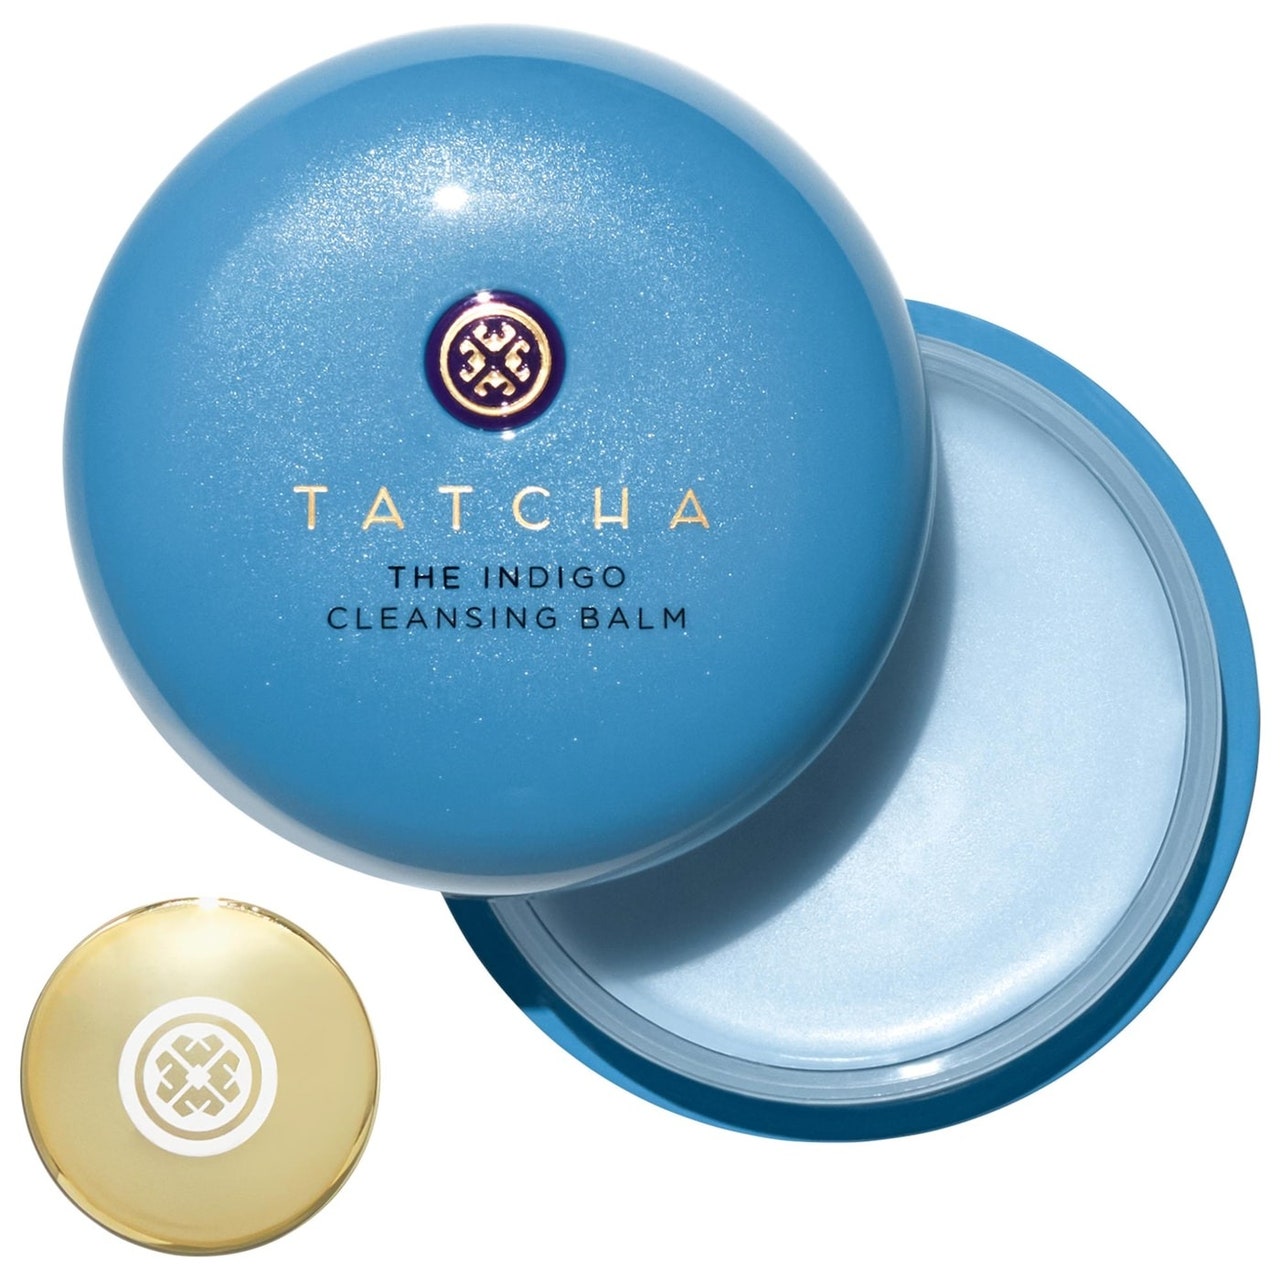 Tatcha The Indigo Cleansing Balm Draufsicht auf ein blaues Glas mit angelehntem Deckel auf weißem Hintergrund